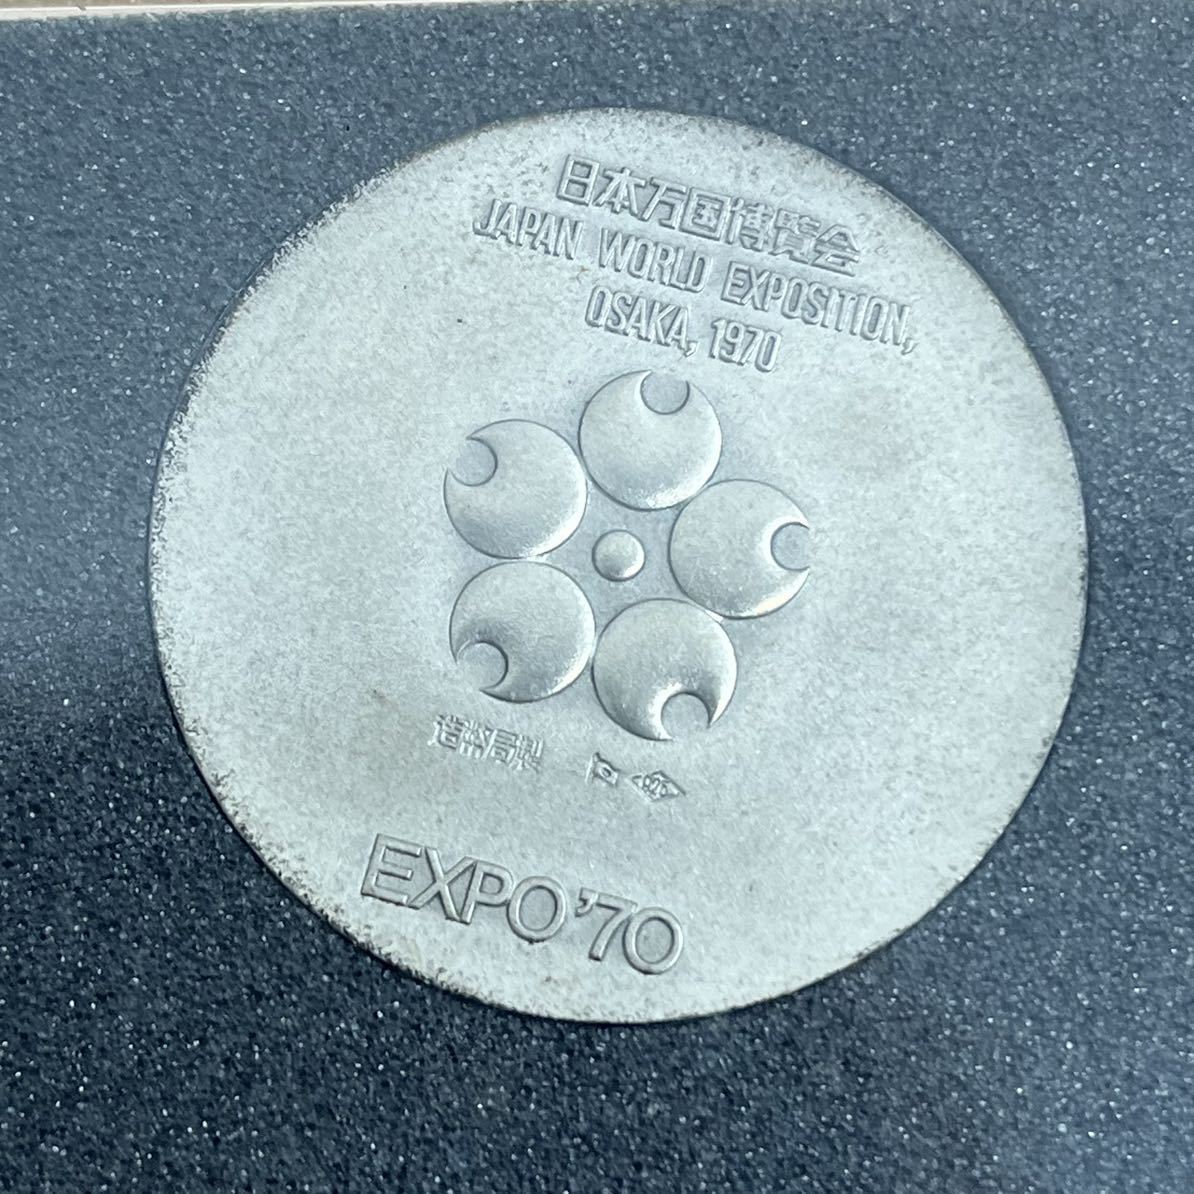 【処分品】日本万国博覧会記念メダル EXPO 70 シルバー925 銀メダルSILVER 造幣局 保管品 18.6g_画像4